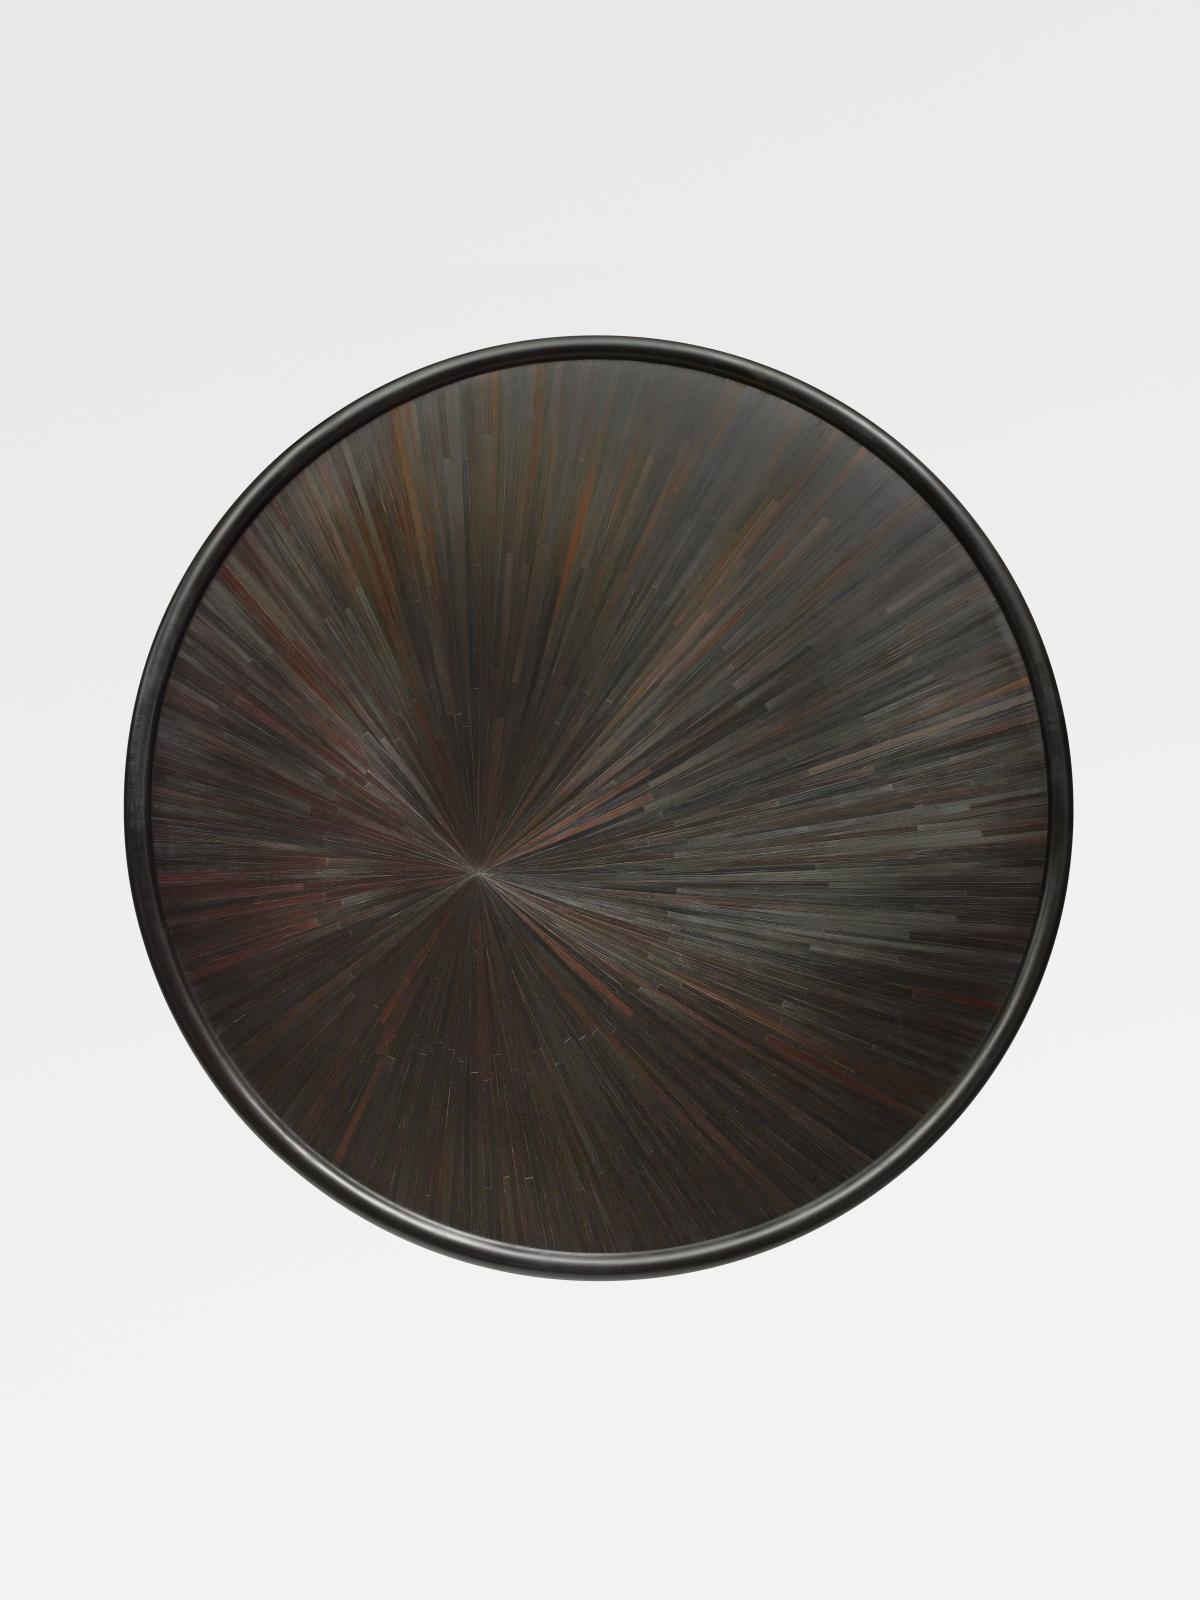 Table basse Helios, design Nicolas Aubagnac, piétement en érable massif noirci huilé et ciré, plateau de marqueterie de paille noire, verre de protect